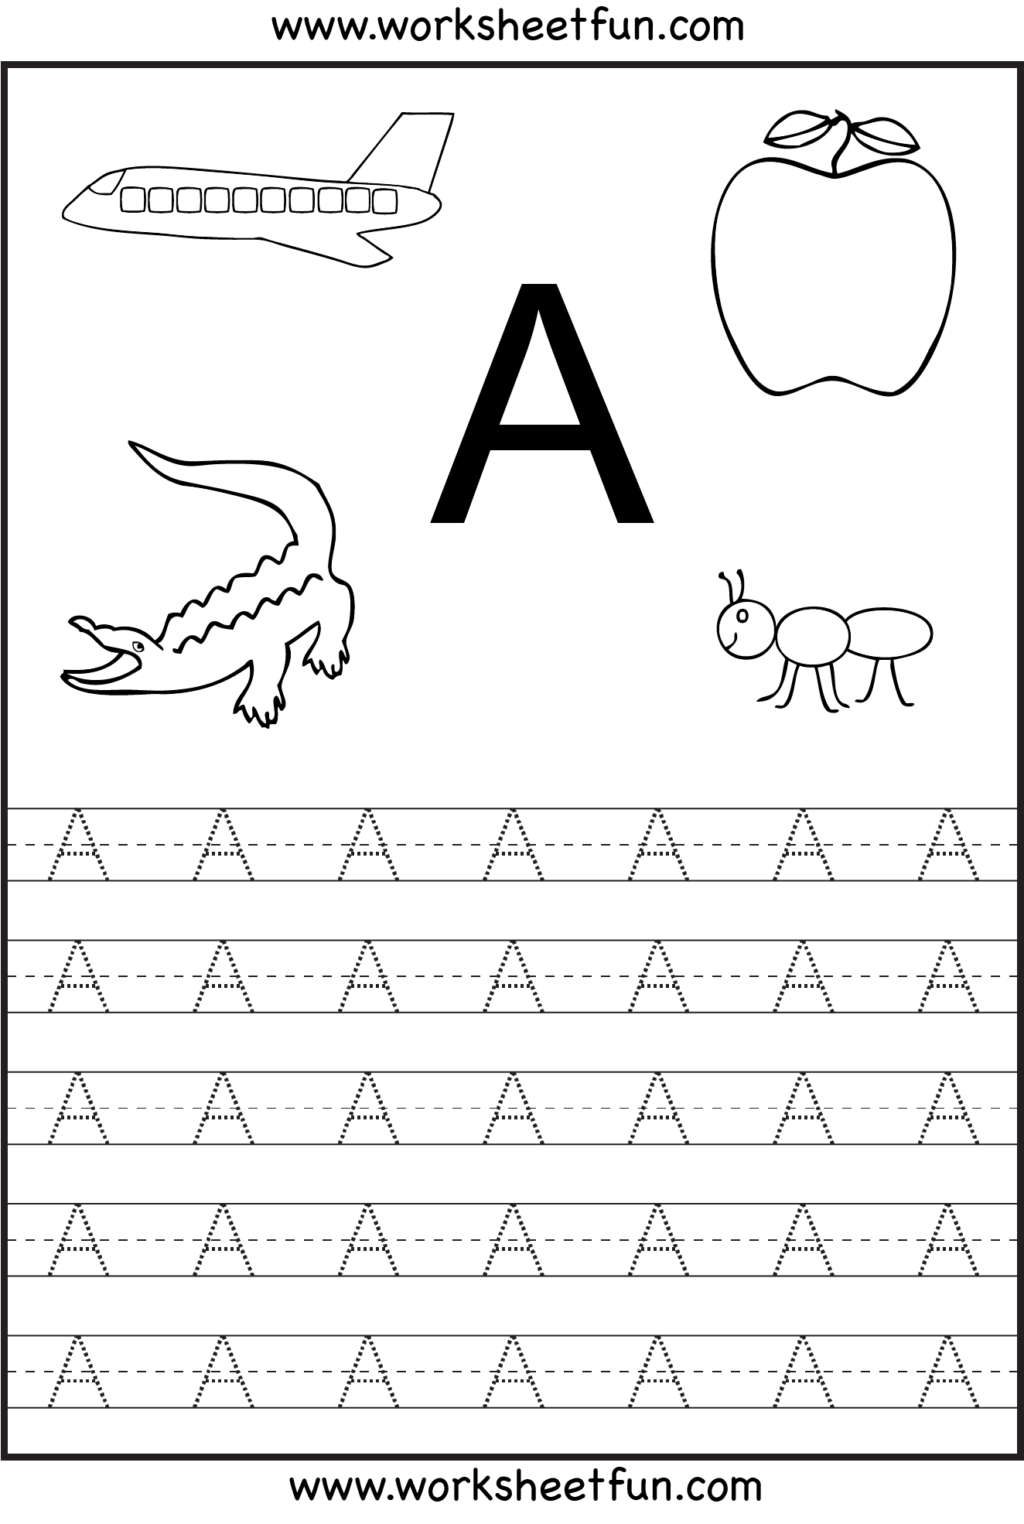 Worksheet ~ Preschool Worksheetsreeor Preschoolers Printable with Alphabet Worksheets For Pre-K